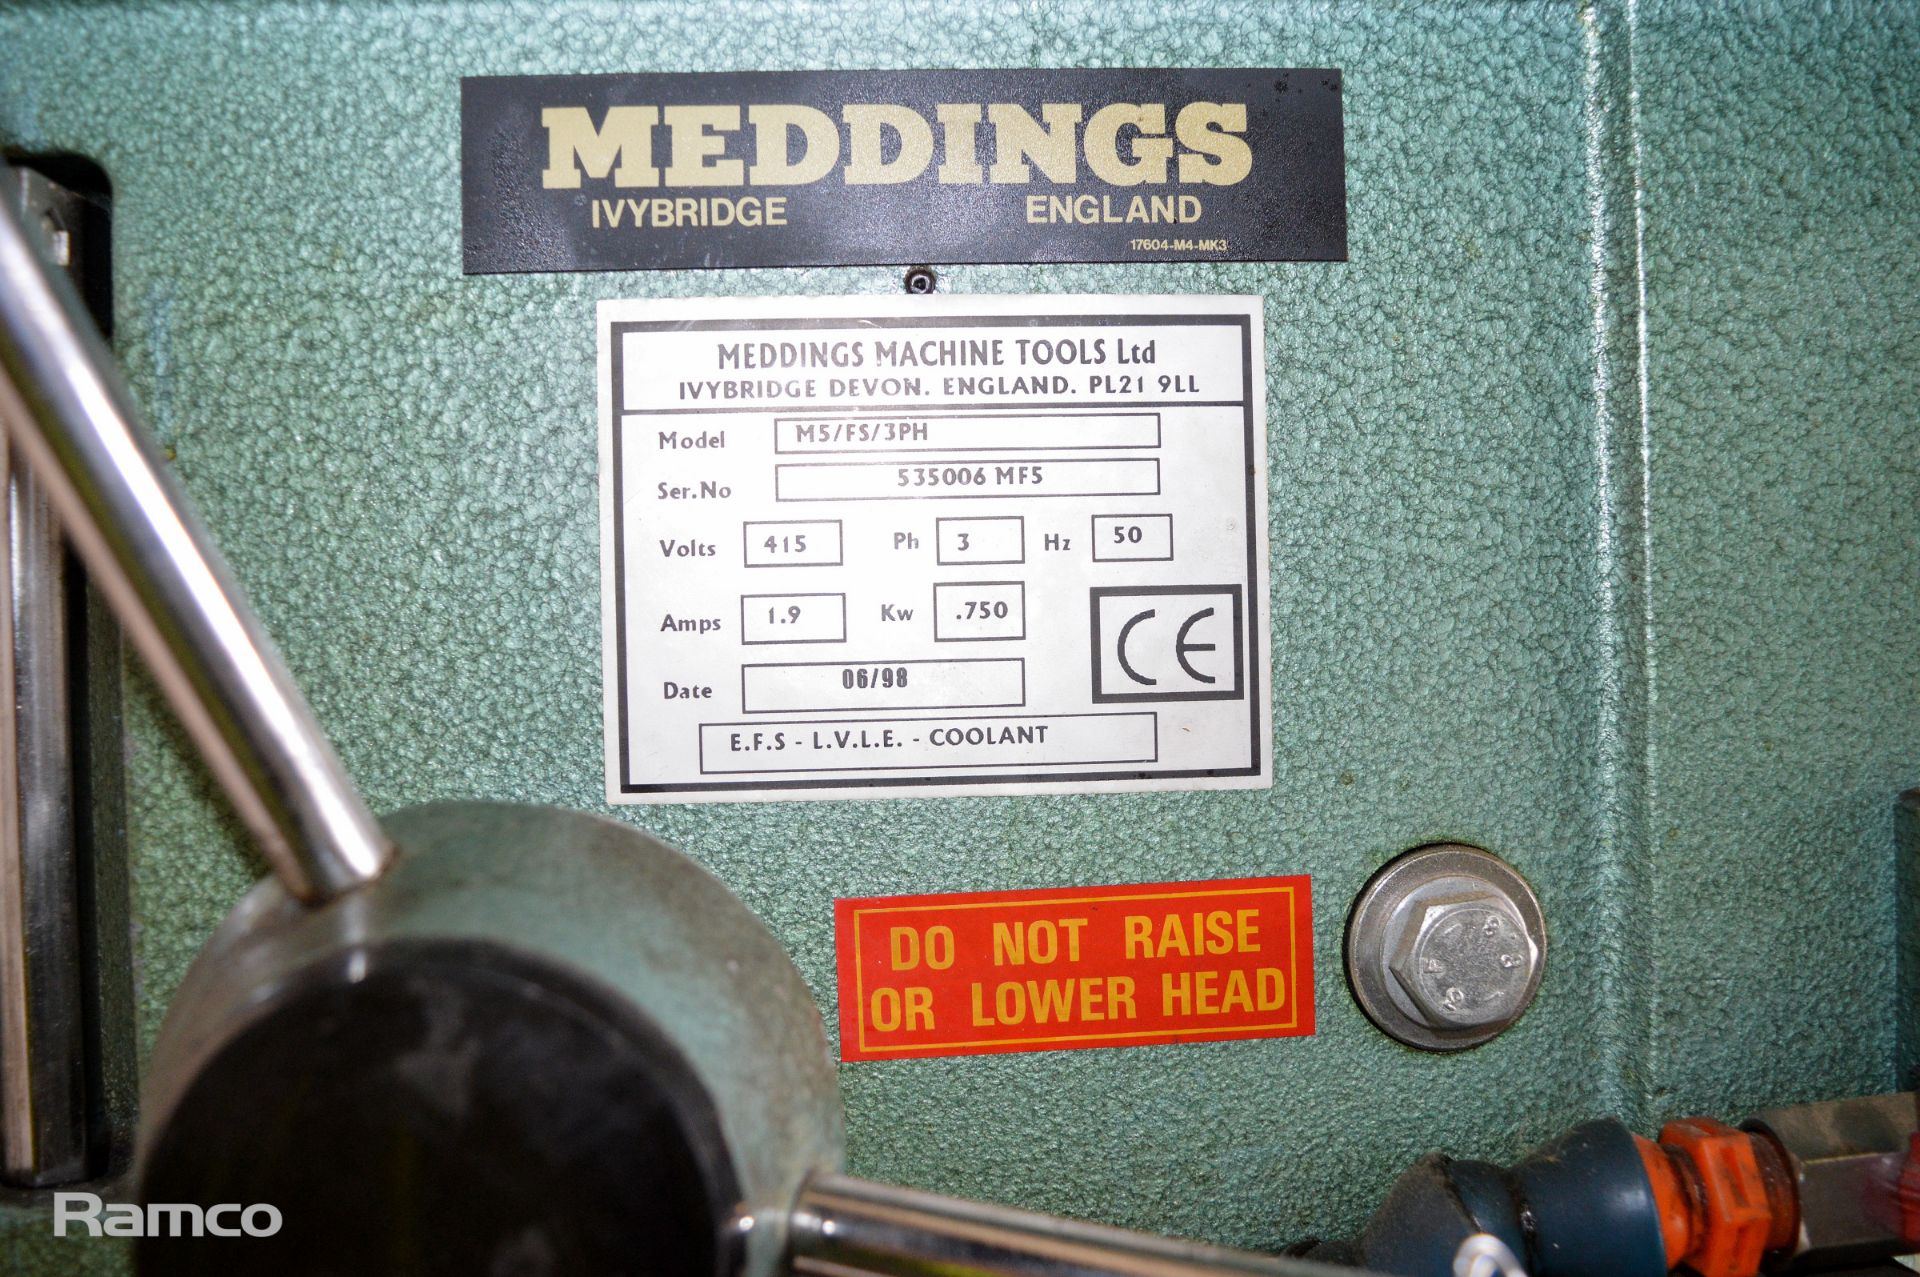 Meddingsa M5 / FS pedestal drill - 3ph - serial 535006 MFS - 415V - 1.9amps - .750 Kw - Image 5 of 8